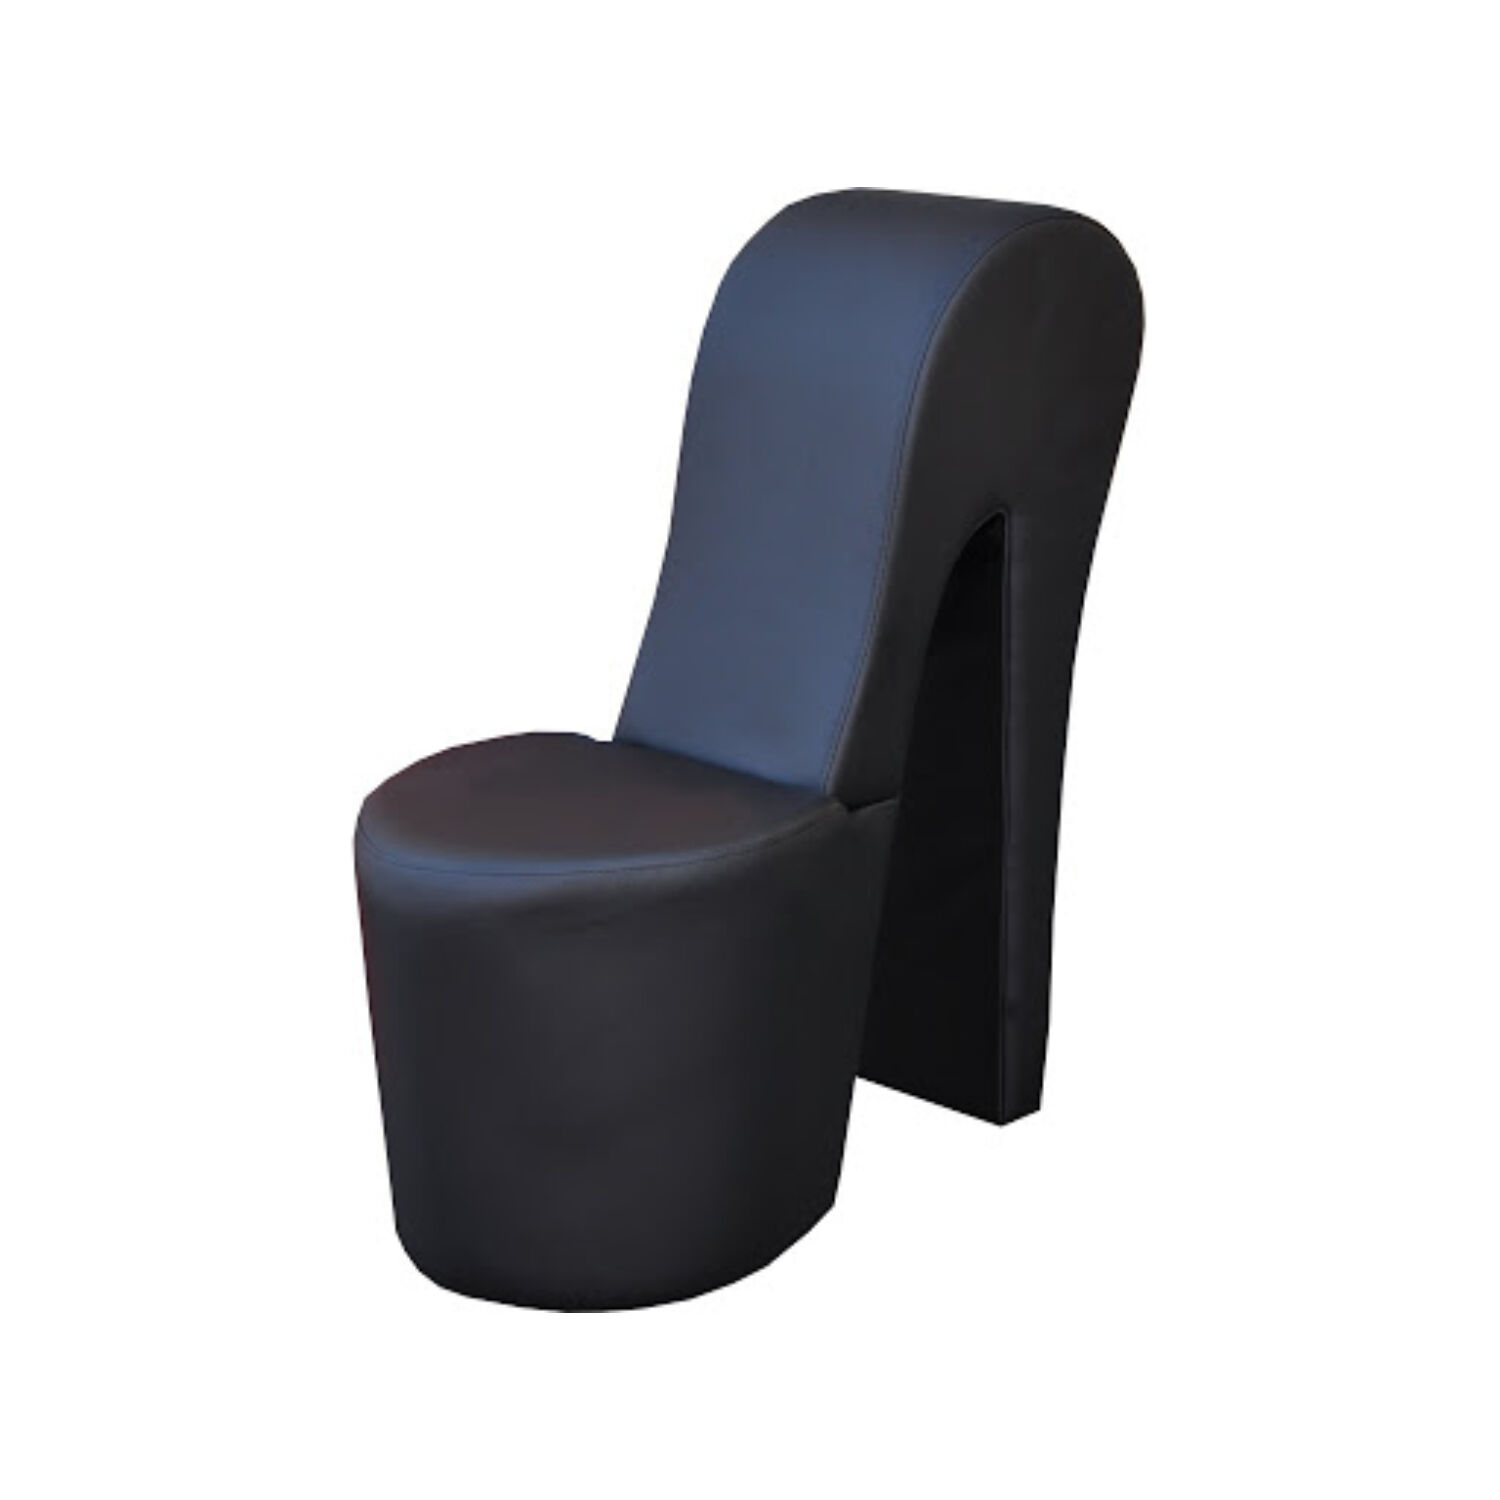 Bota futurisztikus dizájnú fotel FEKETE színben